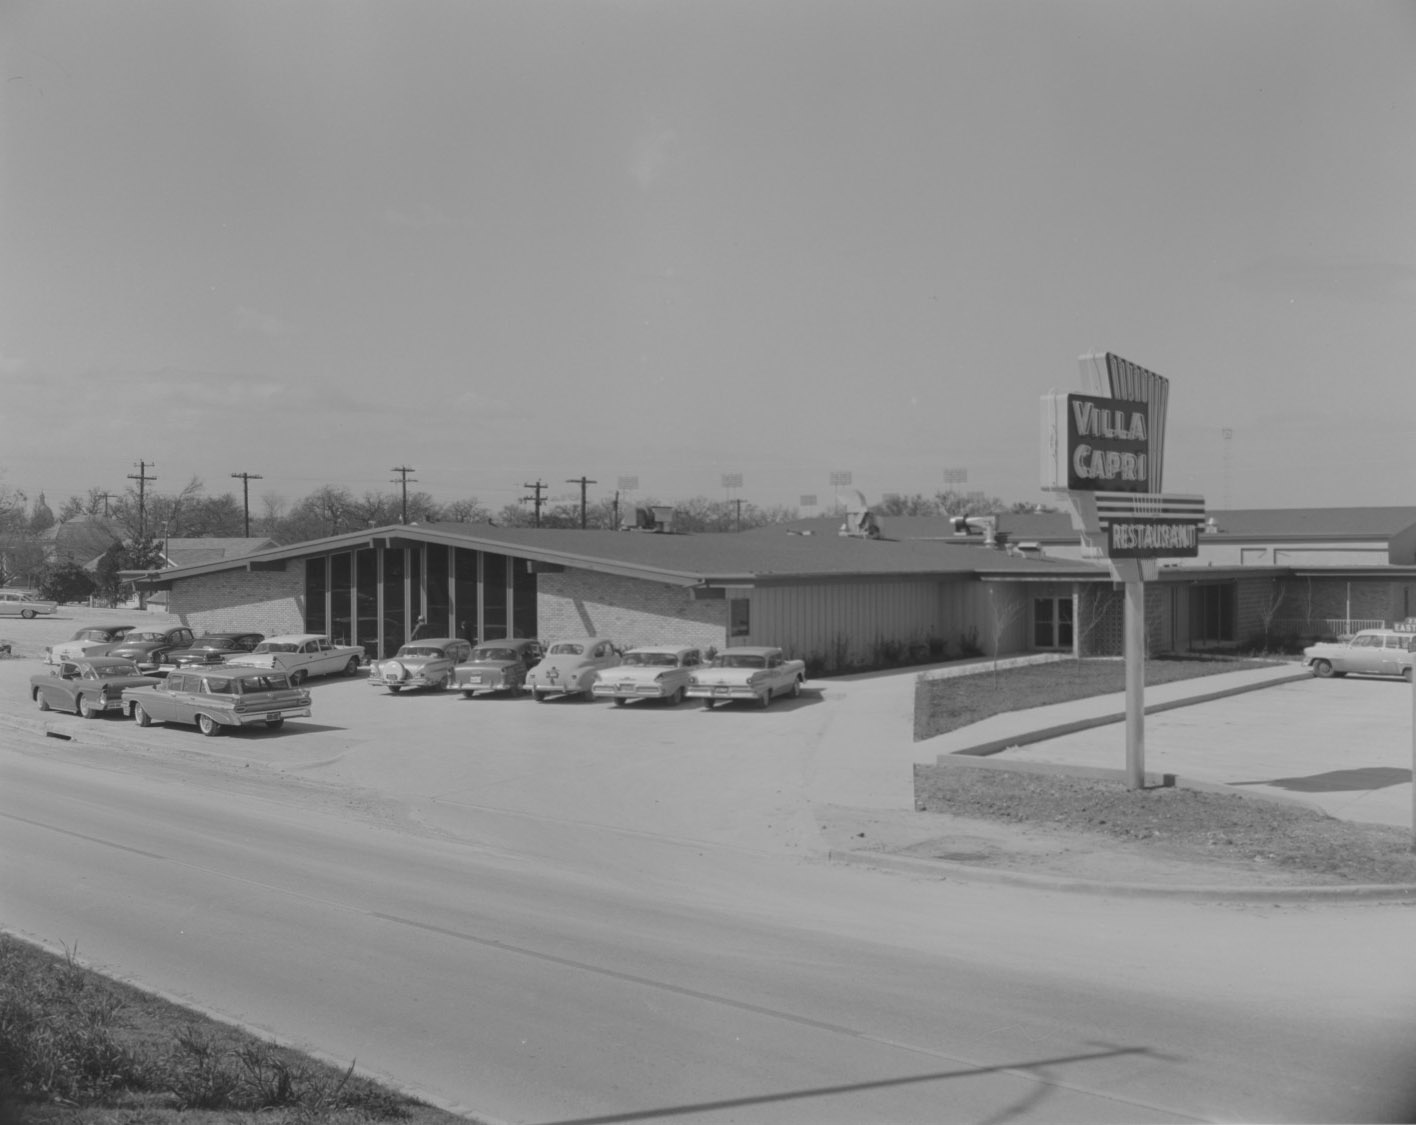 Exterior of Villa Capri Restaurant and Parking Lot, 1959.